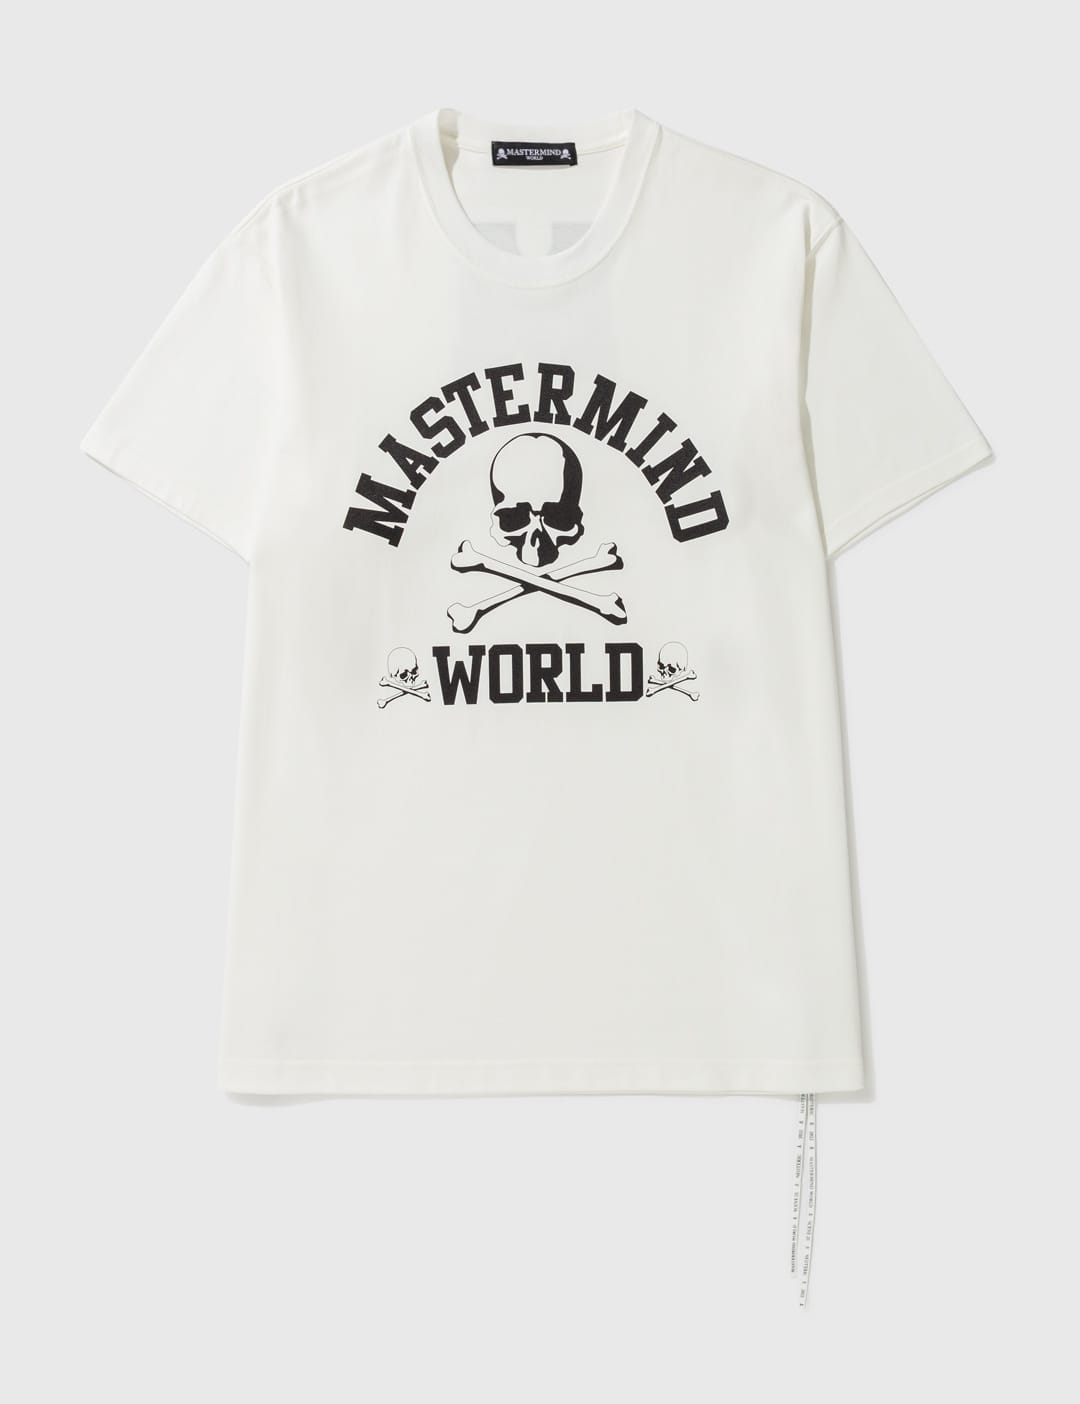 ★新品・未使用★MASTER MIND WORLD Tシャツ